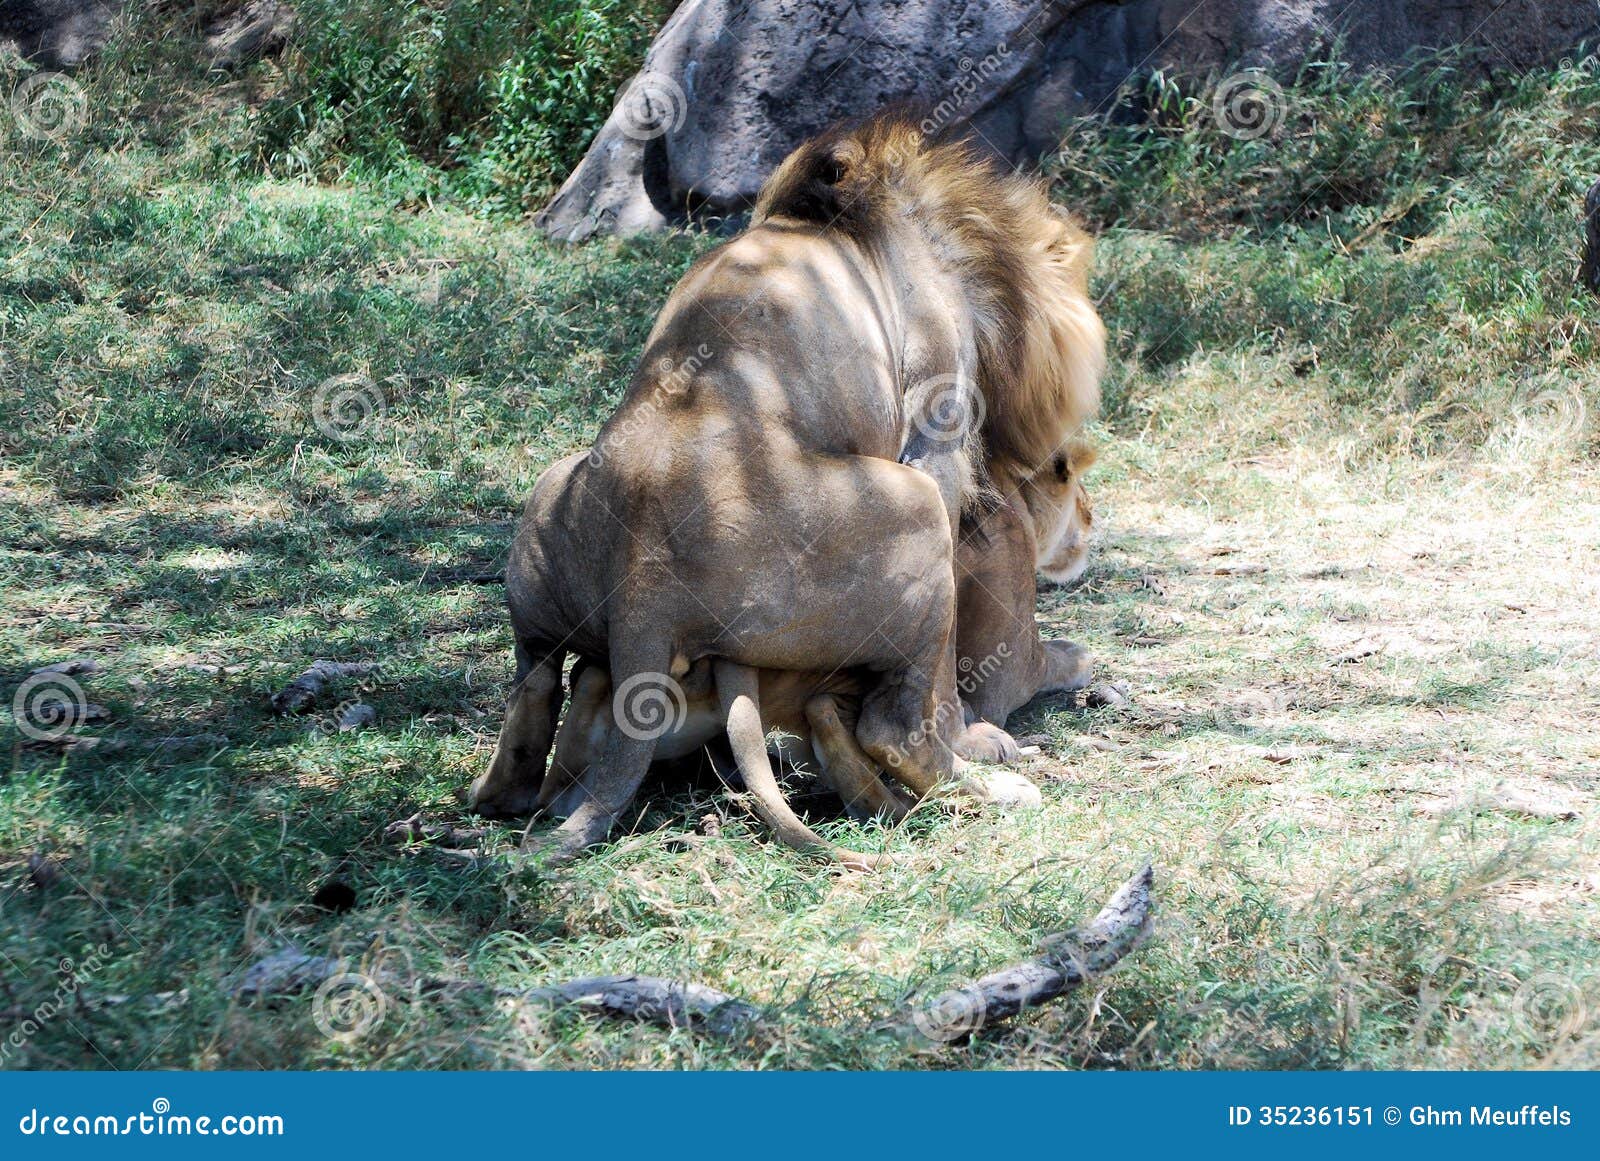 leone e leonessa accoppiamento nel parco nazionale di serengeti tanzania 35236151